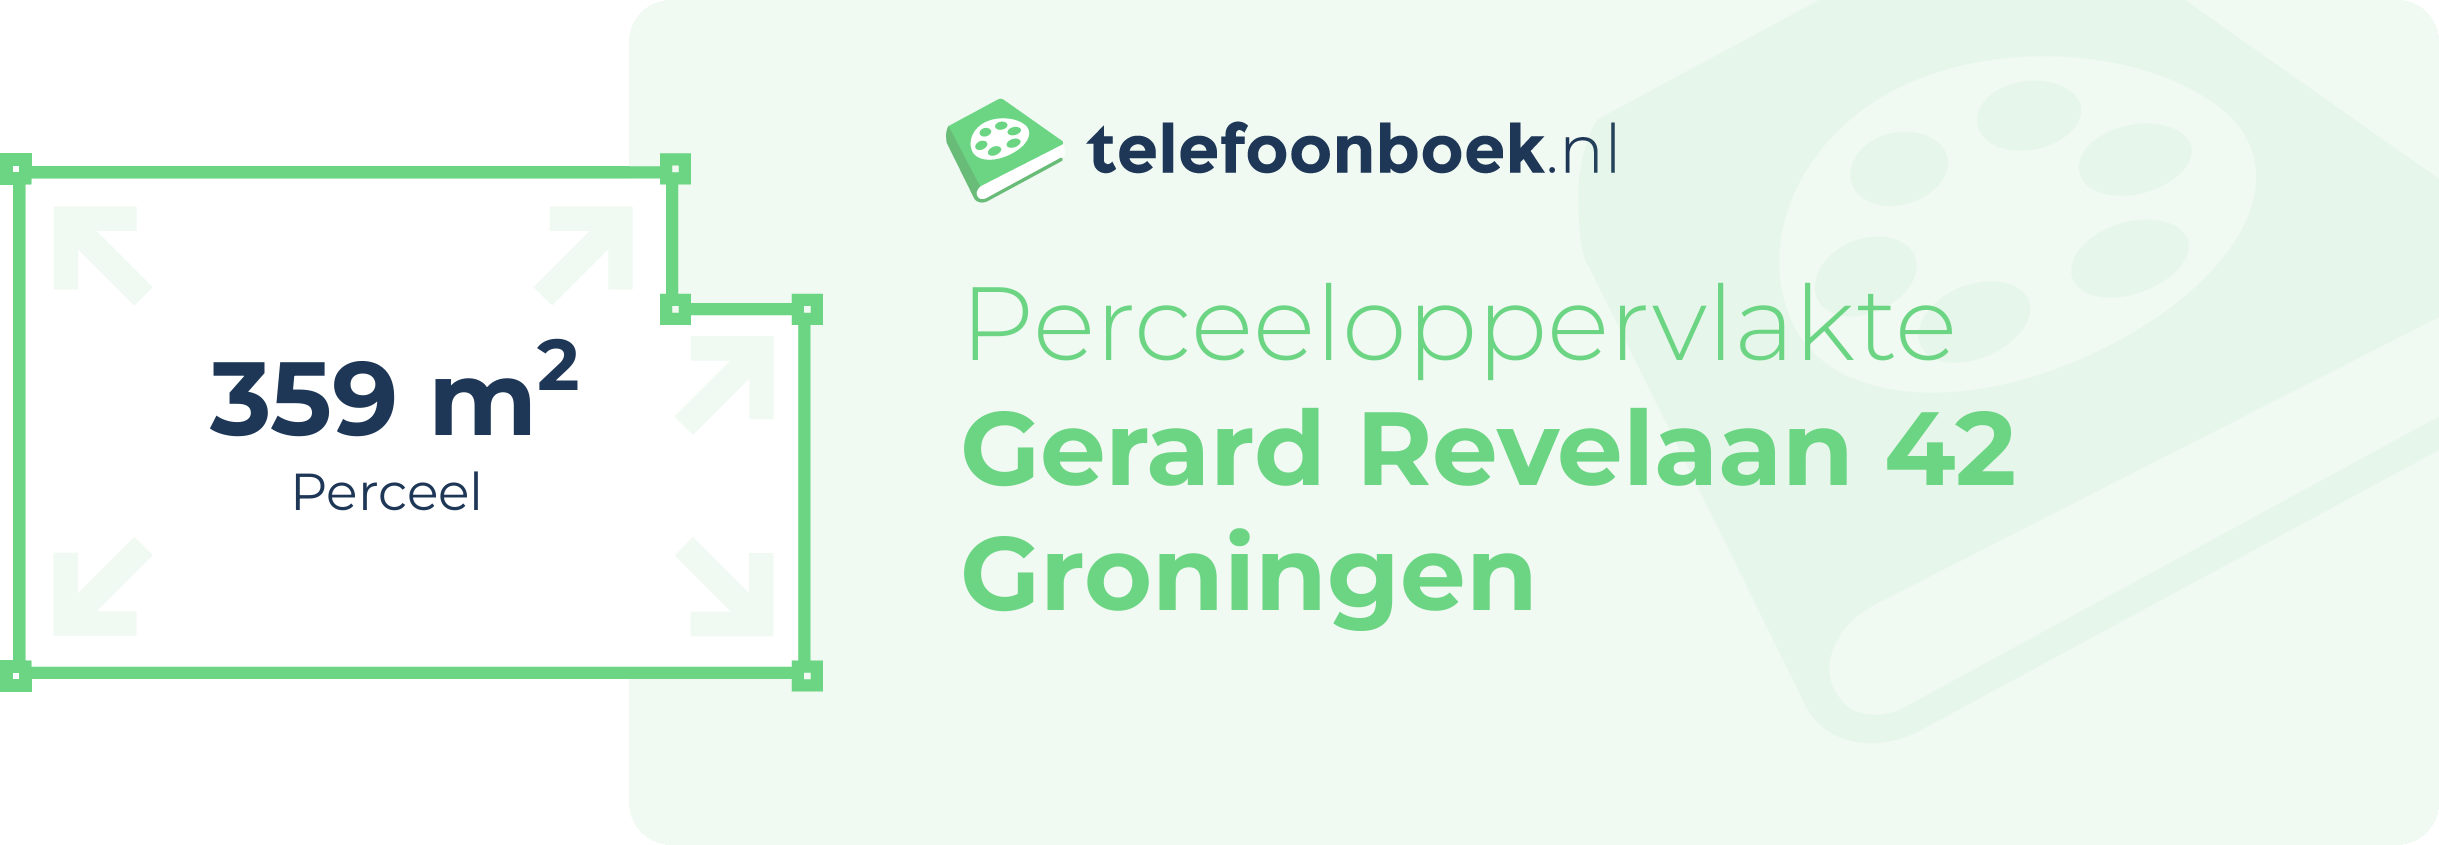 Perceeloppervlakte Gerard Revelaan 42 Groningen